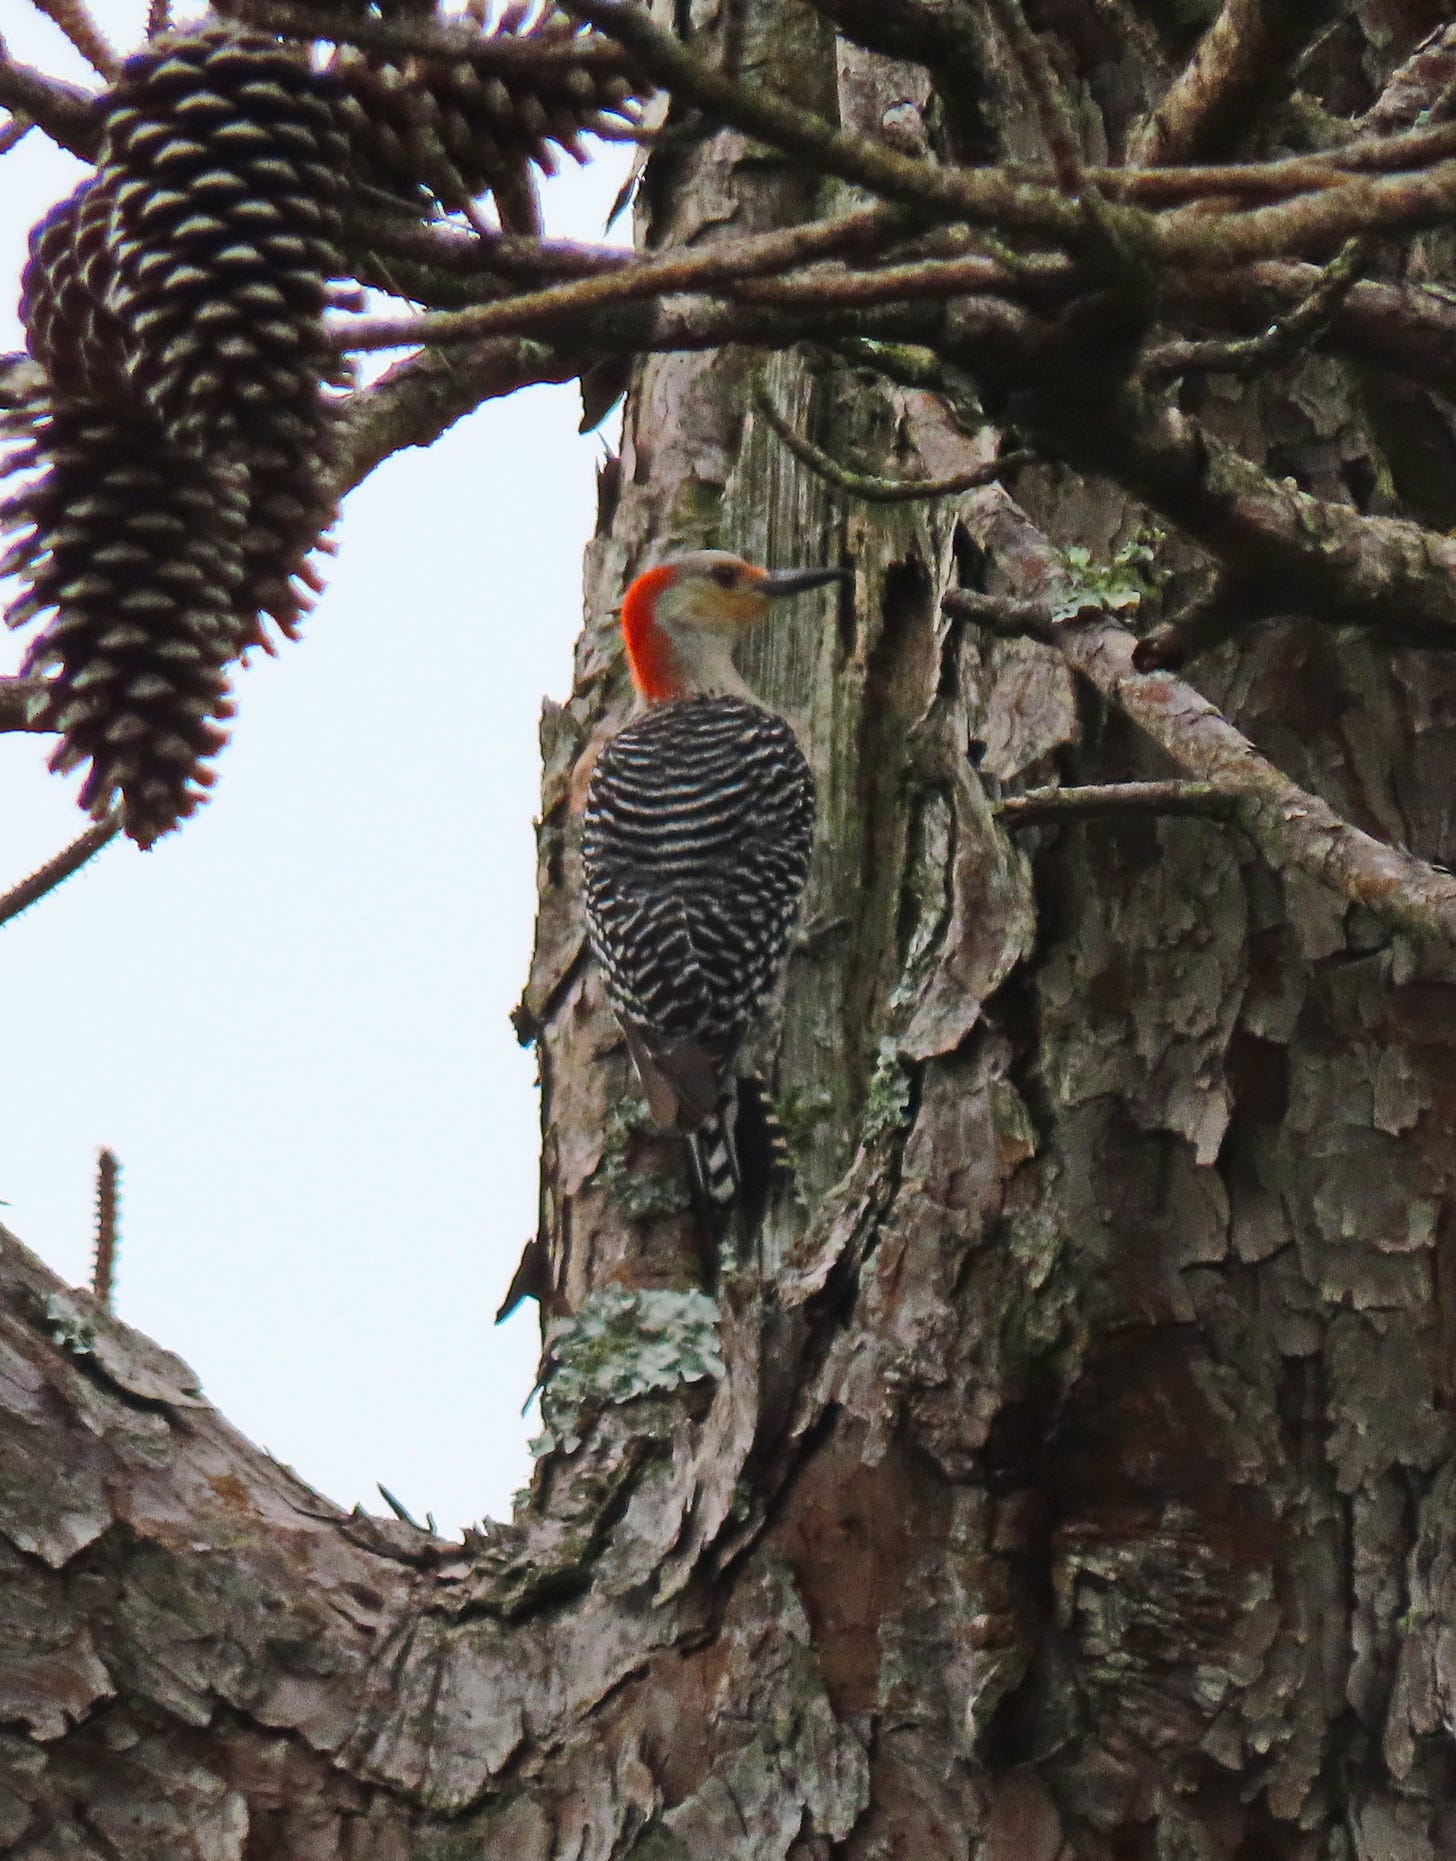 A woodpecker in a pine tree